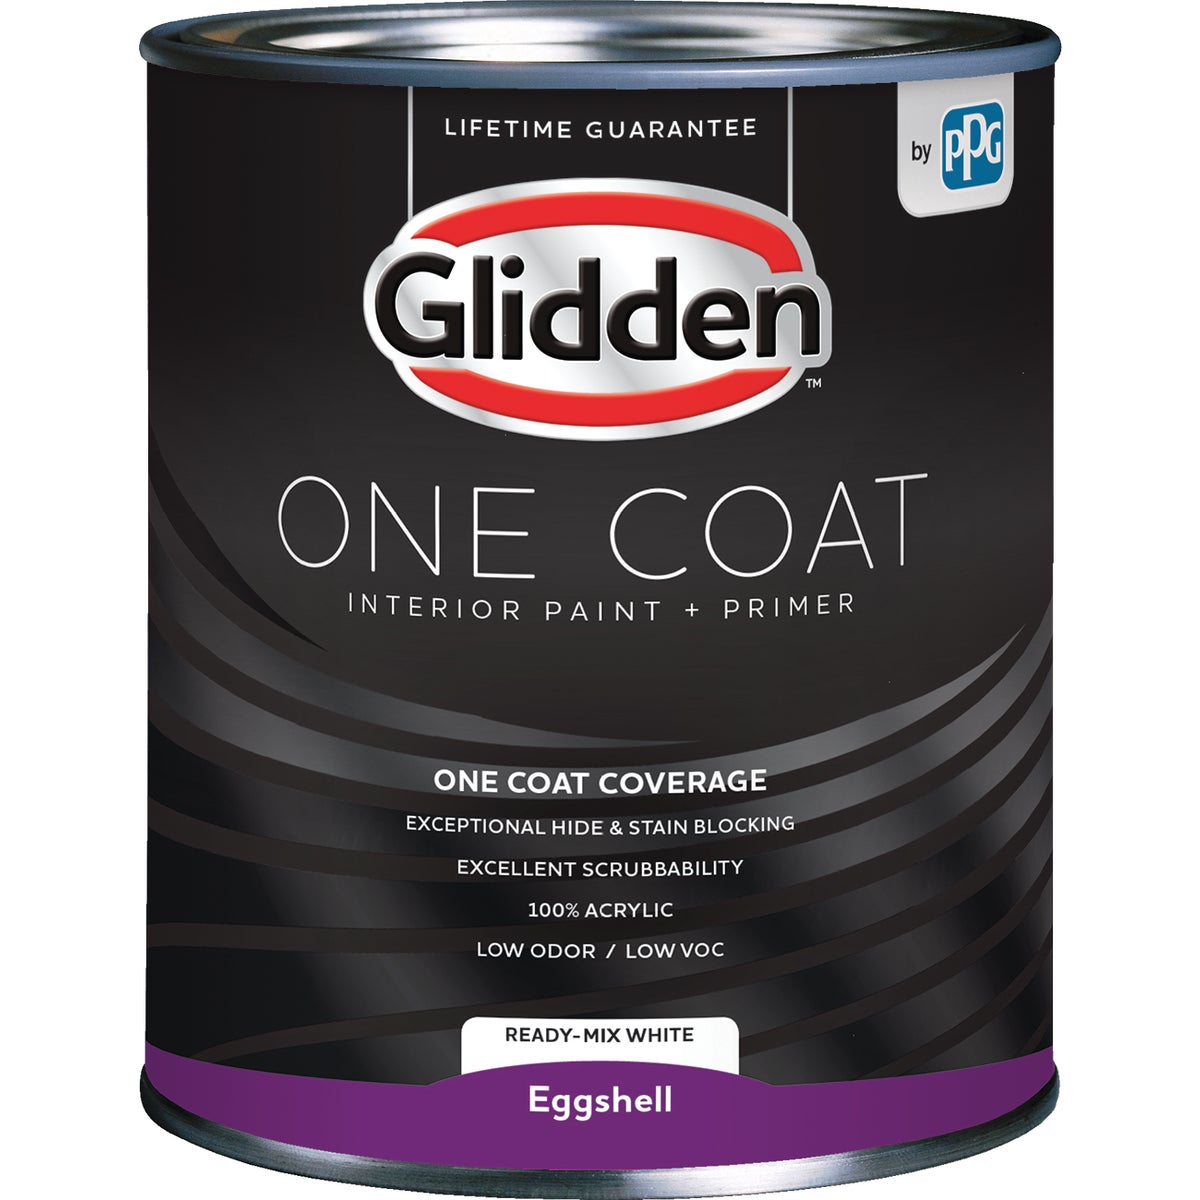 Glidden One Coat Interior Paint + Primer Eggshell Ready Mix White Quart